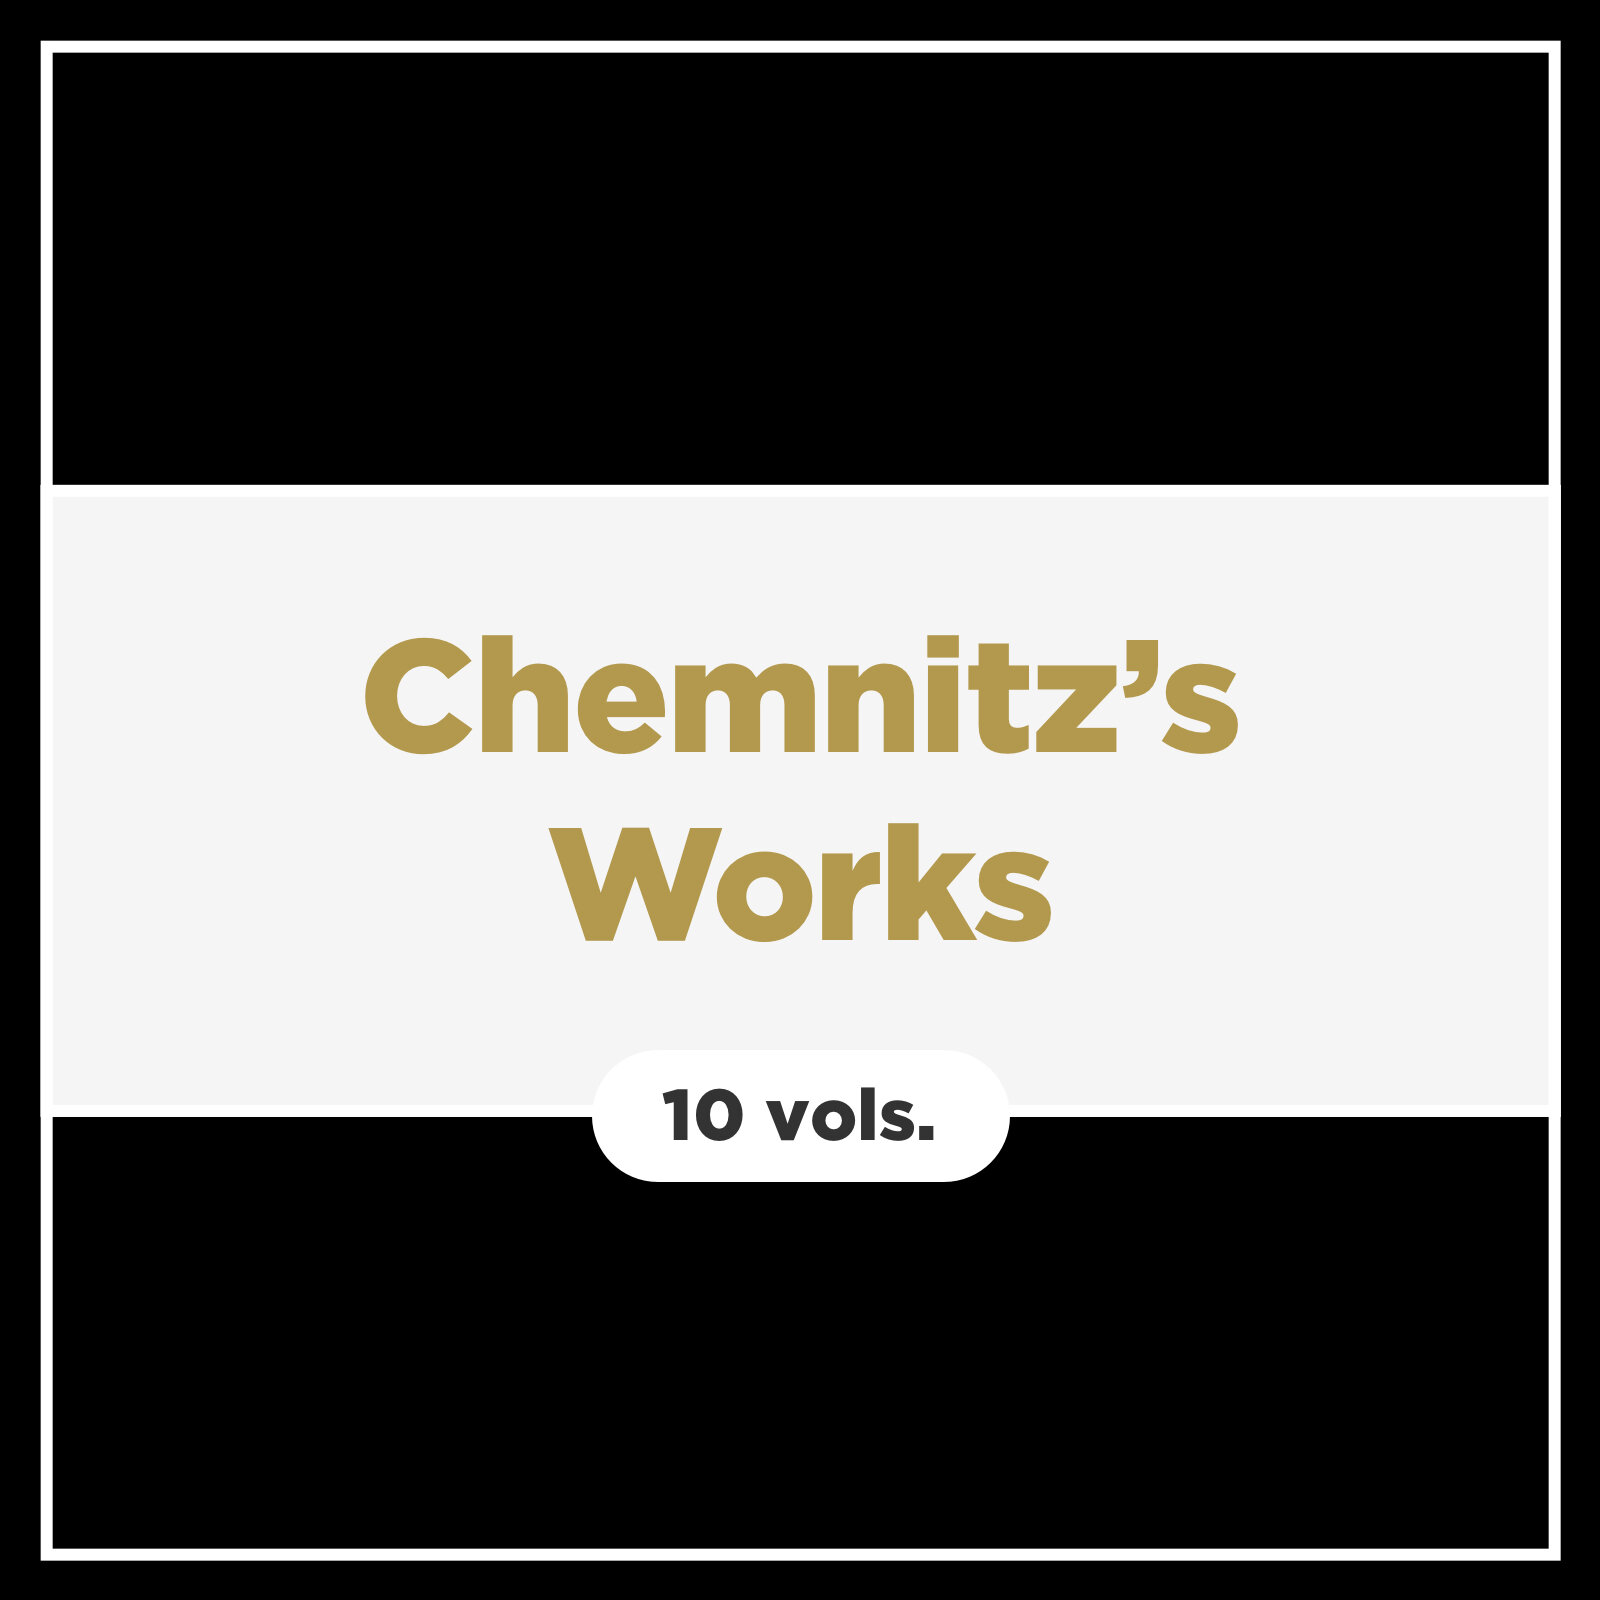 Chemnitz’s Works (10 vols.)